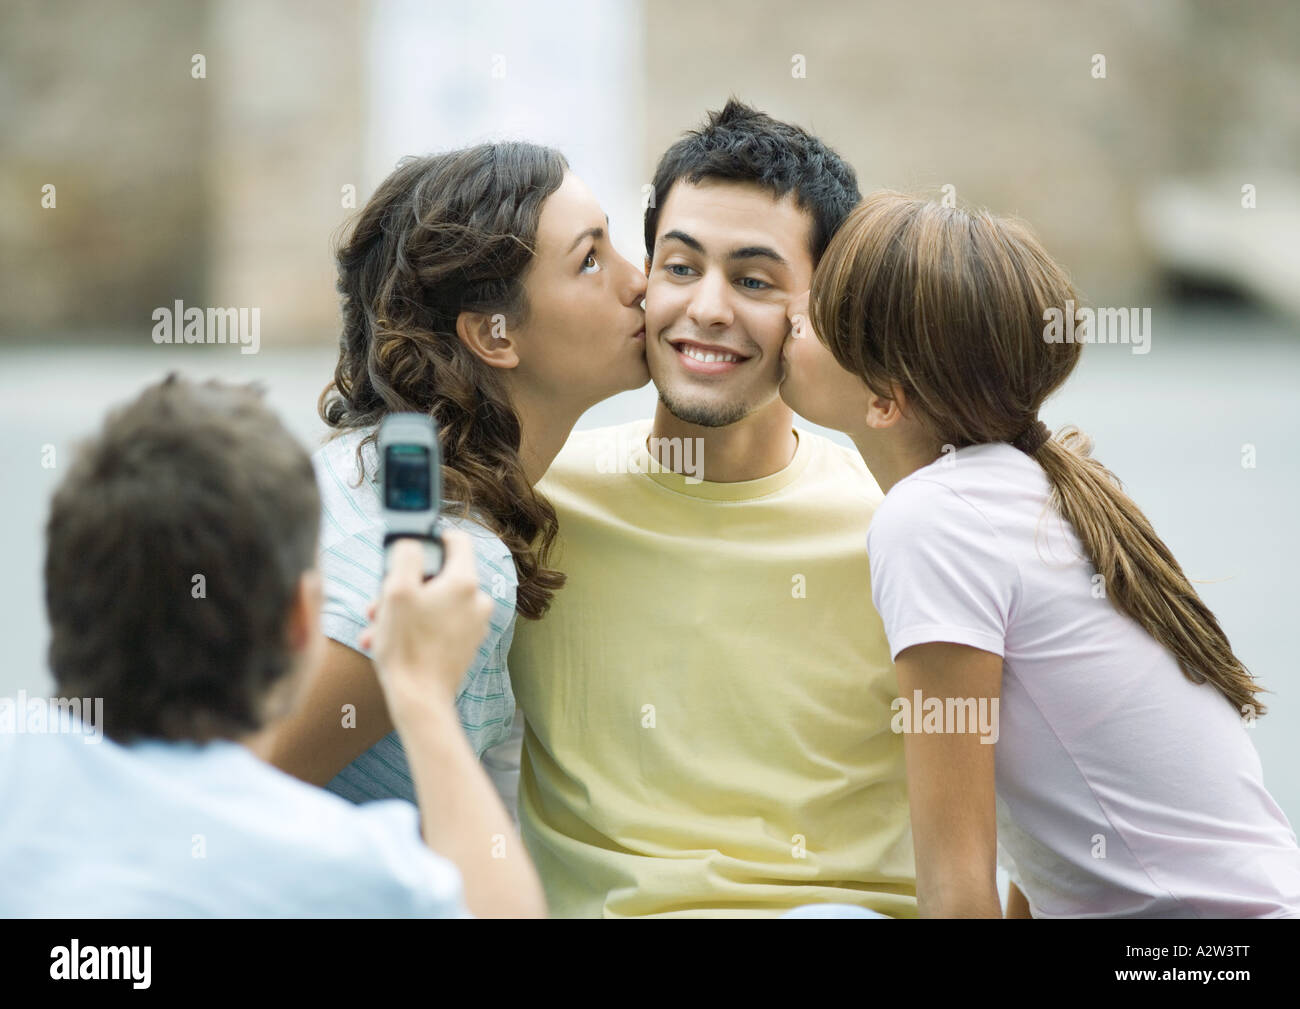 Teen Mädchen Jungen Wangen küssen, während der zweite junge Foto nimmt Stockfoto